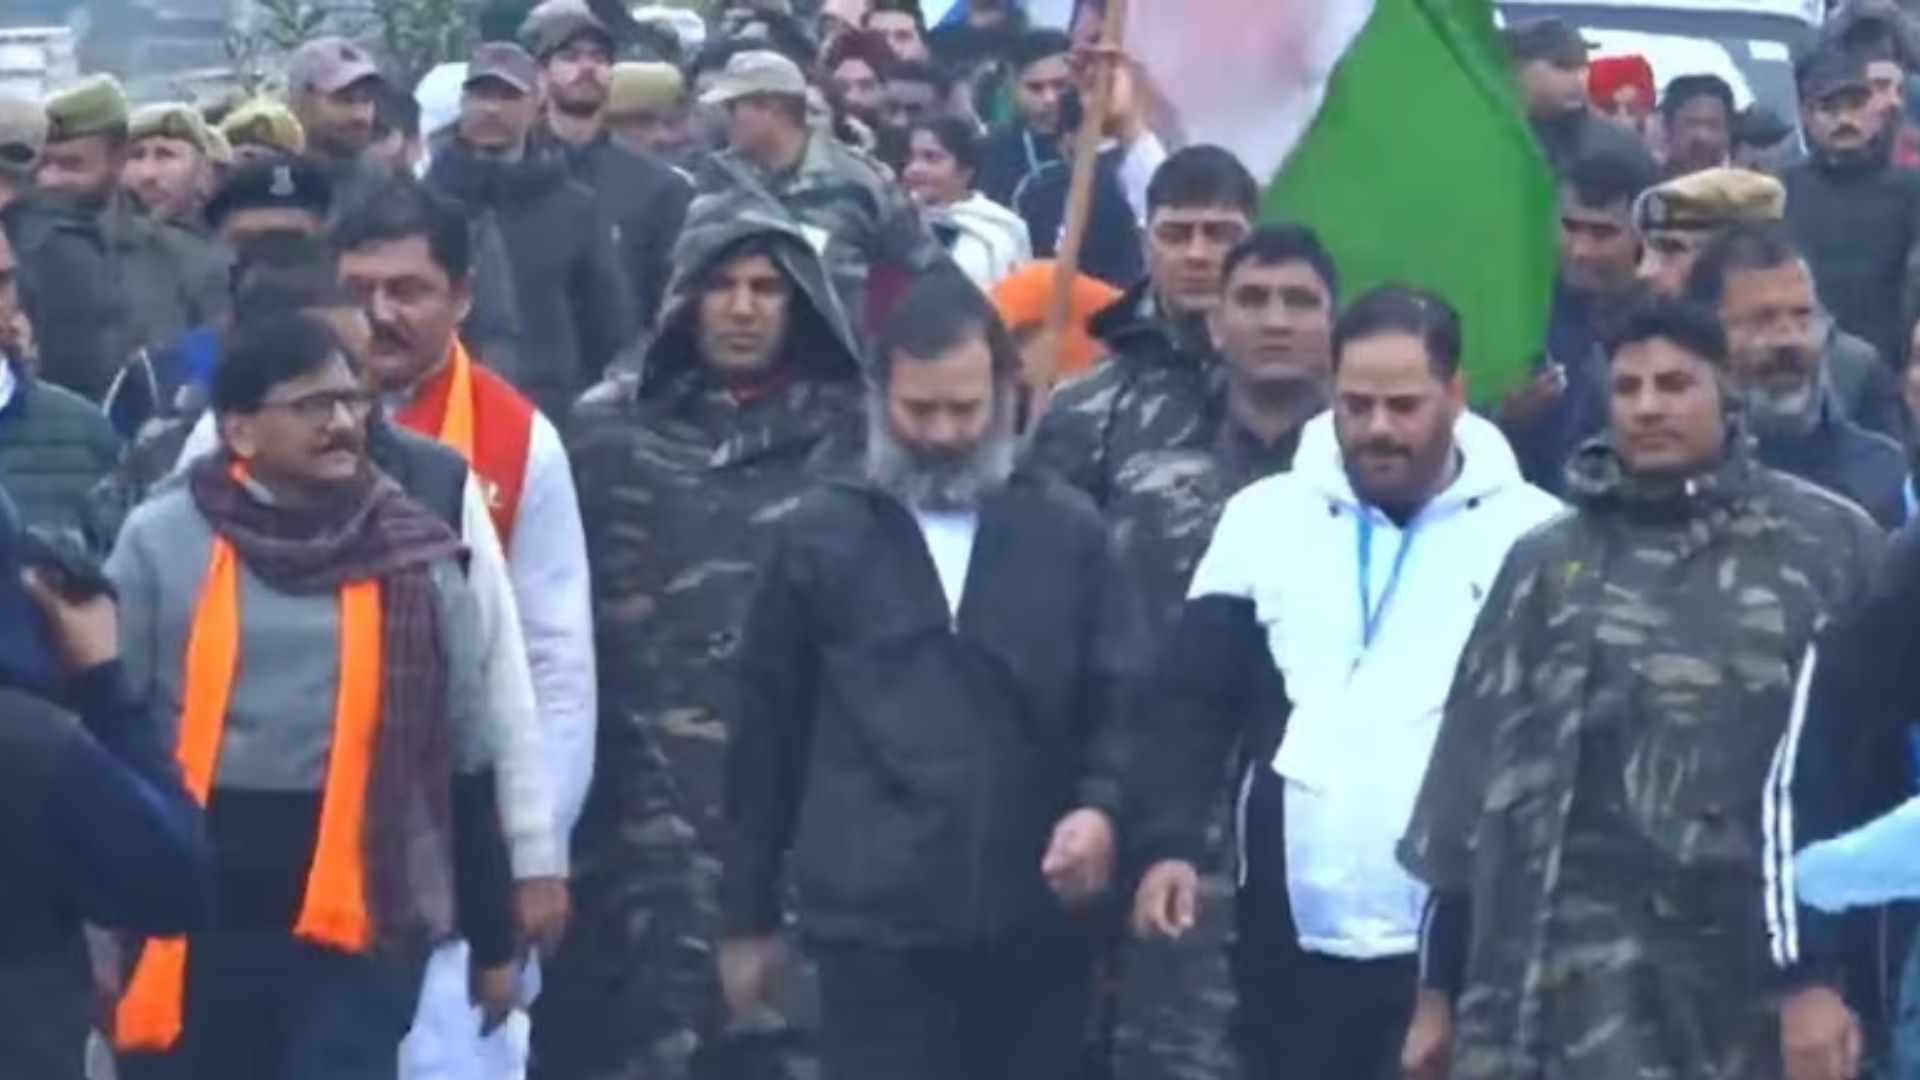 Bharat Jodo Yatra : जम्मू कश्मीर पहुंचते ही राहुल गांधी को लगी सर्दी, पहन ली जैकेट, देखें VIDEO